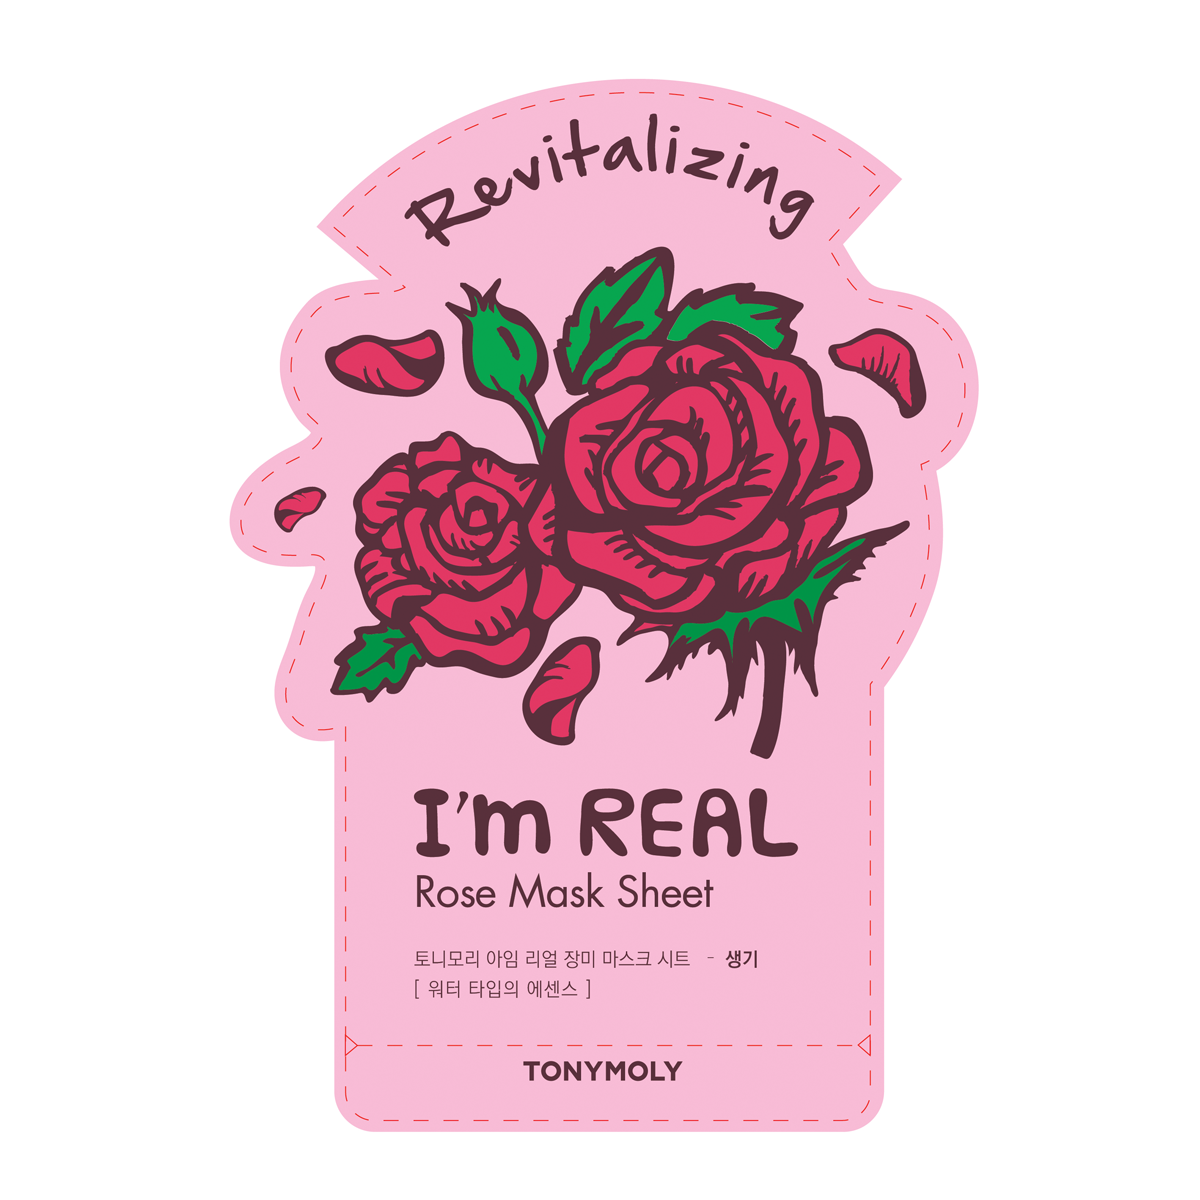 I'm Sheet Mask, Rose